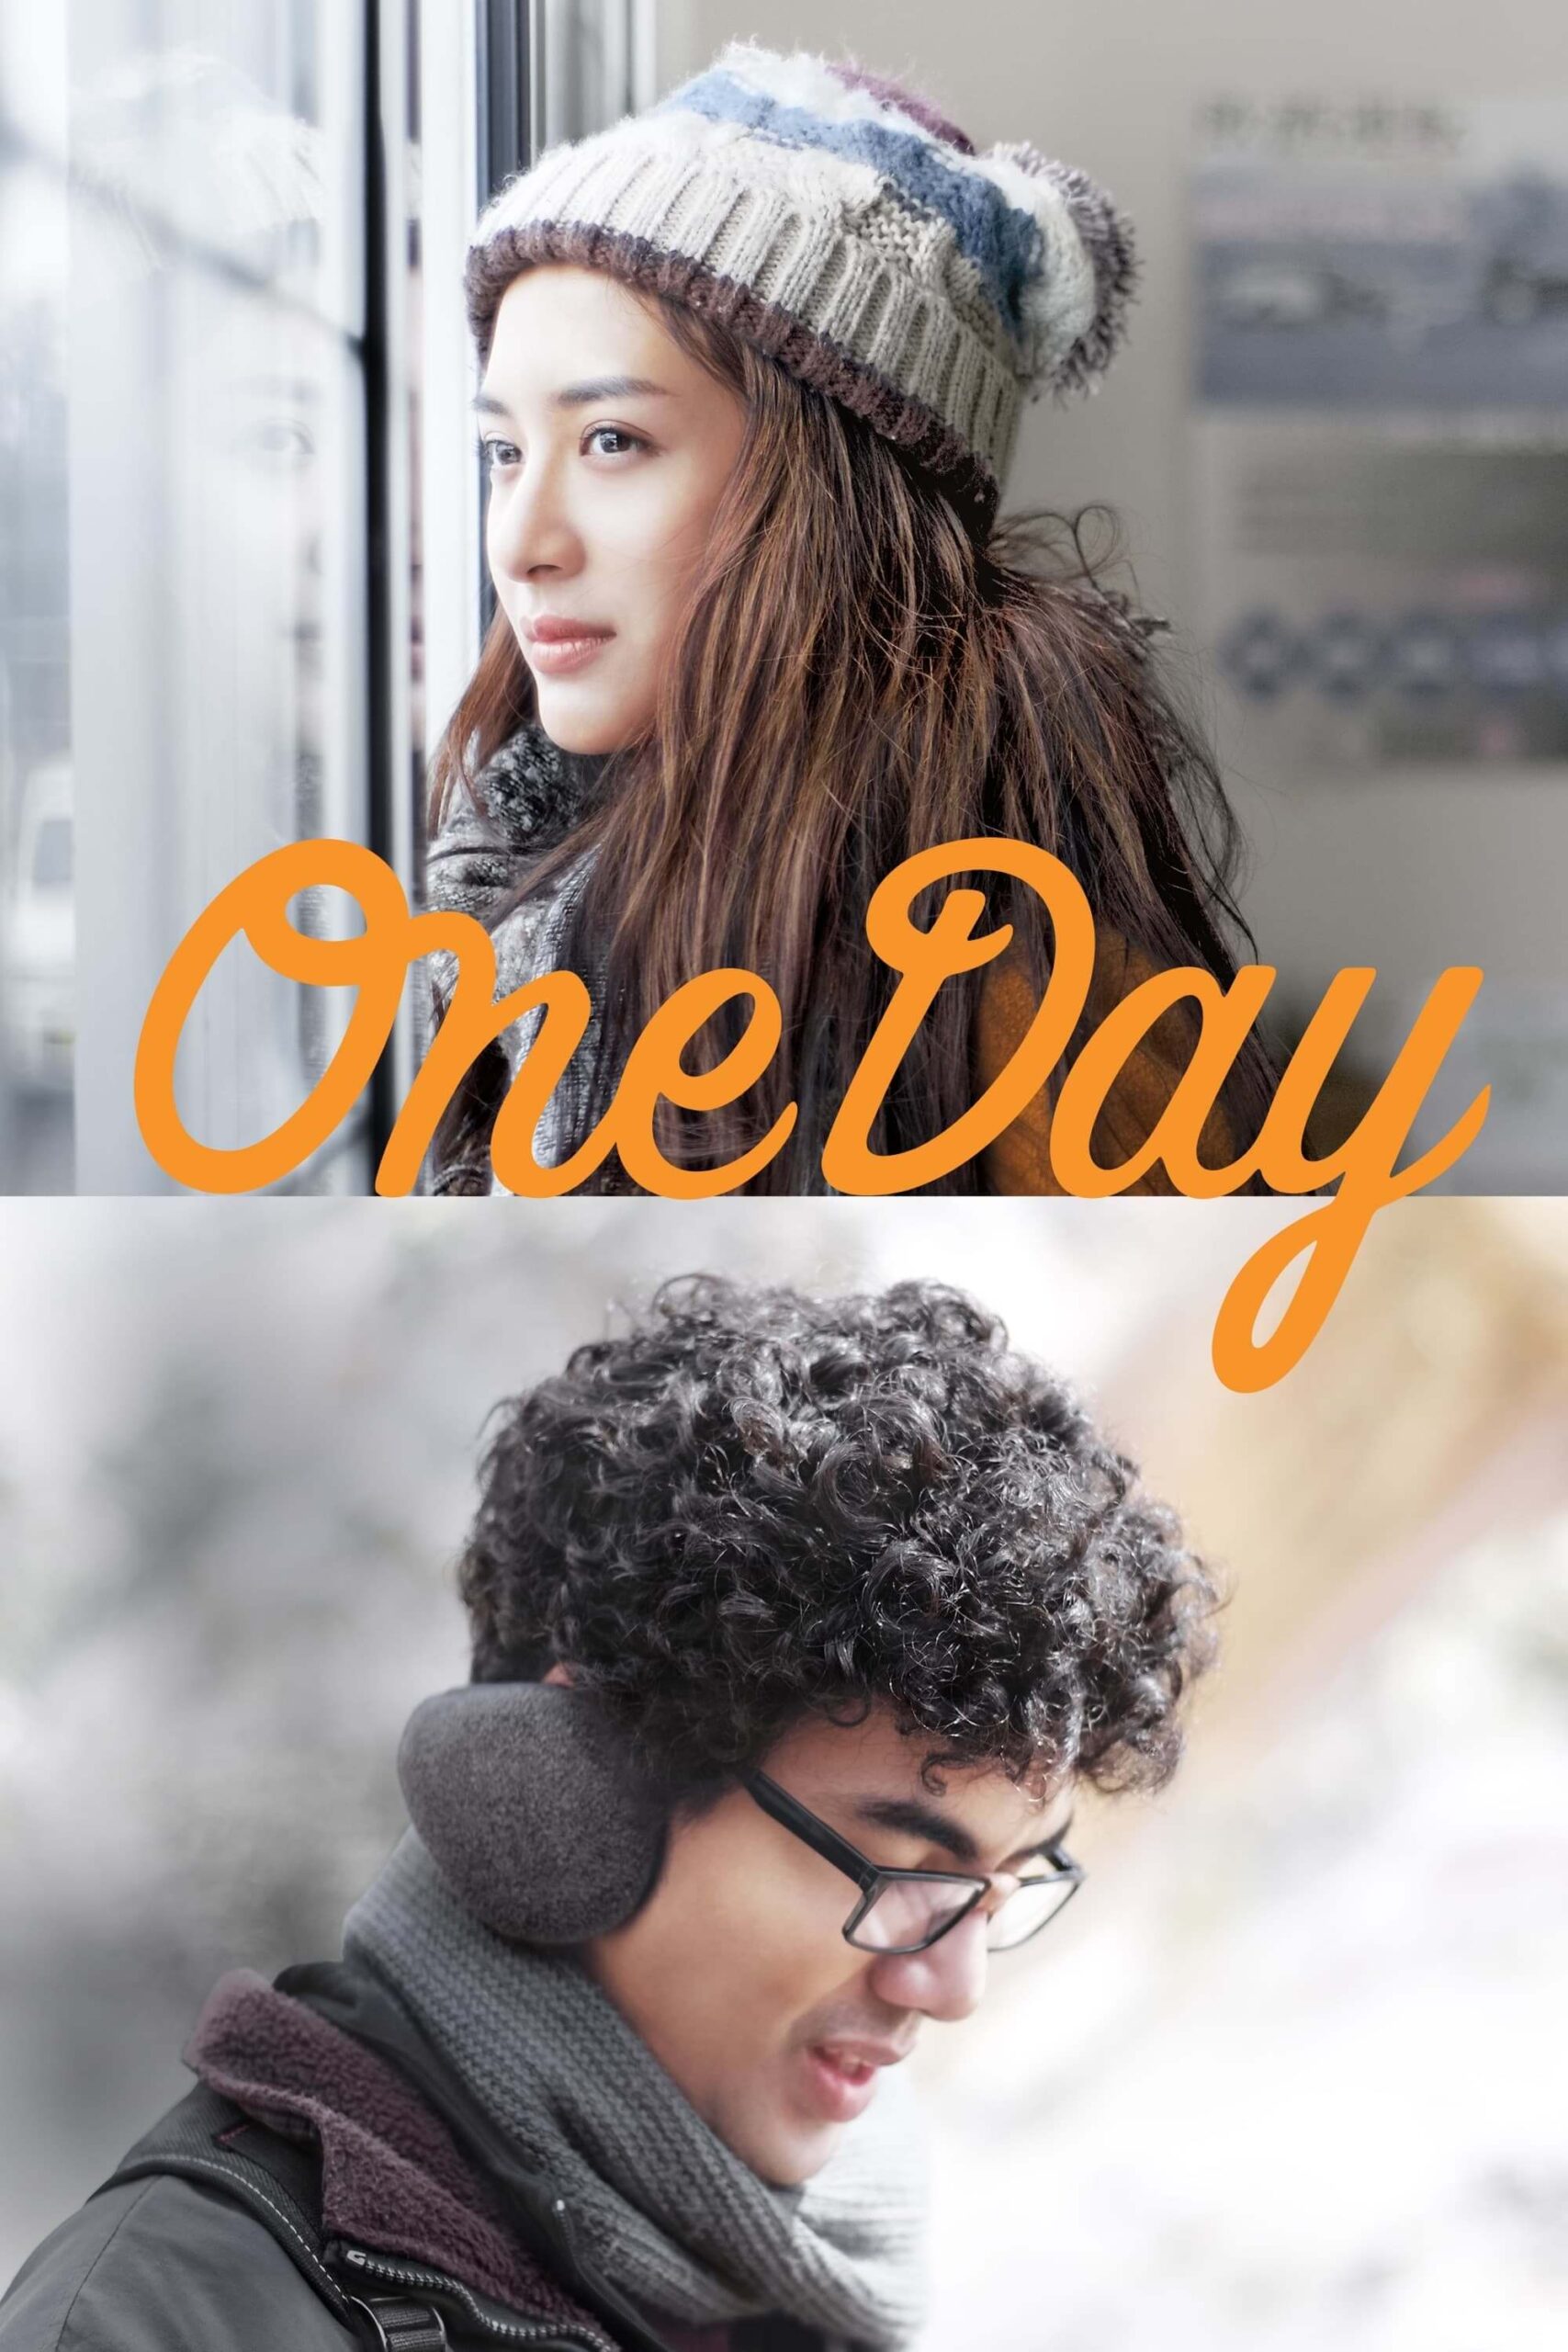 یک روز (One Day)